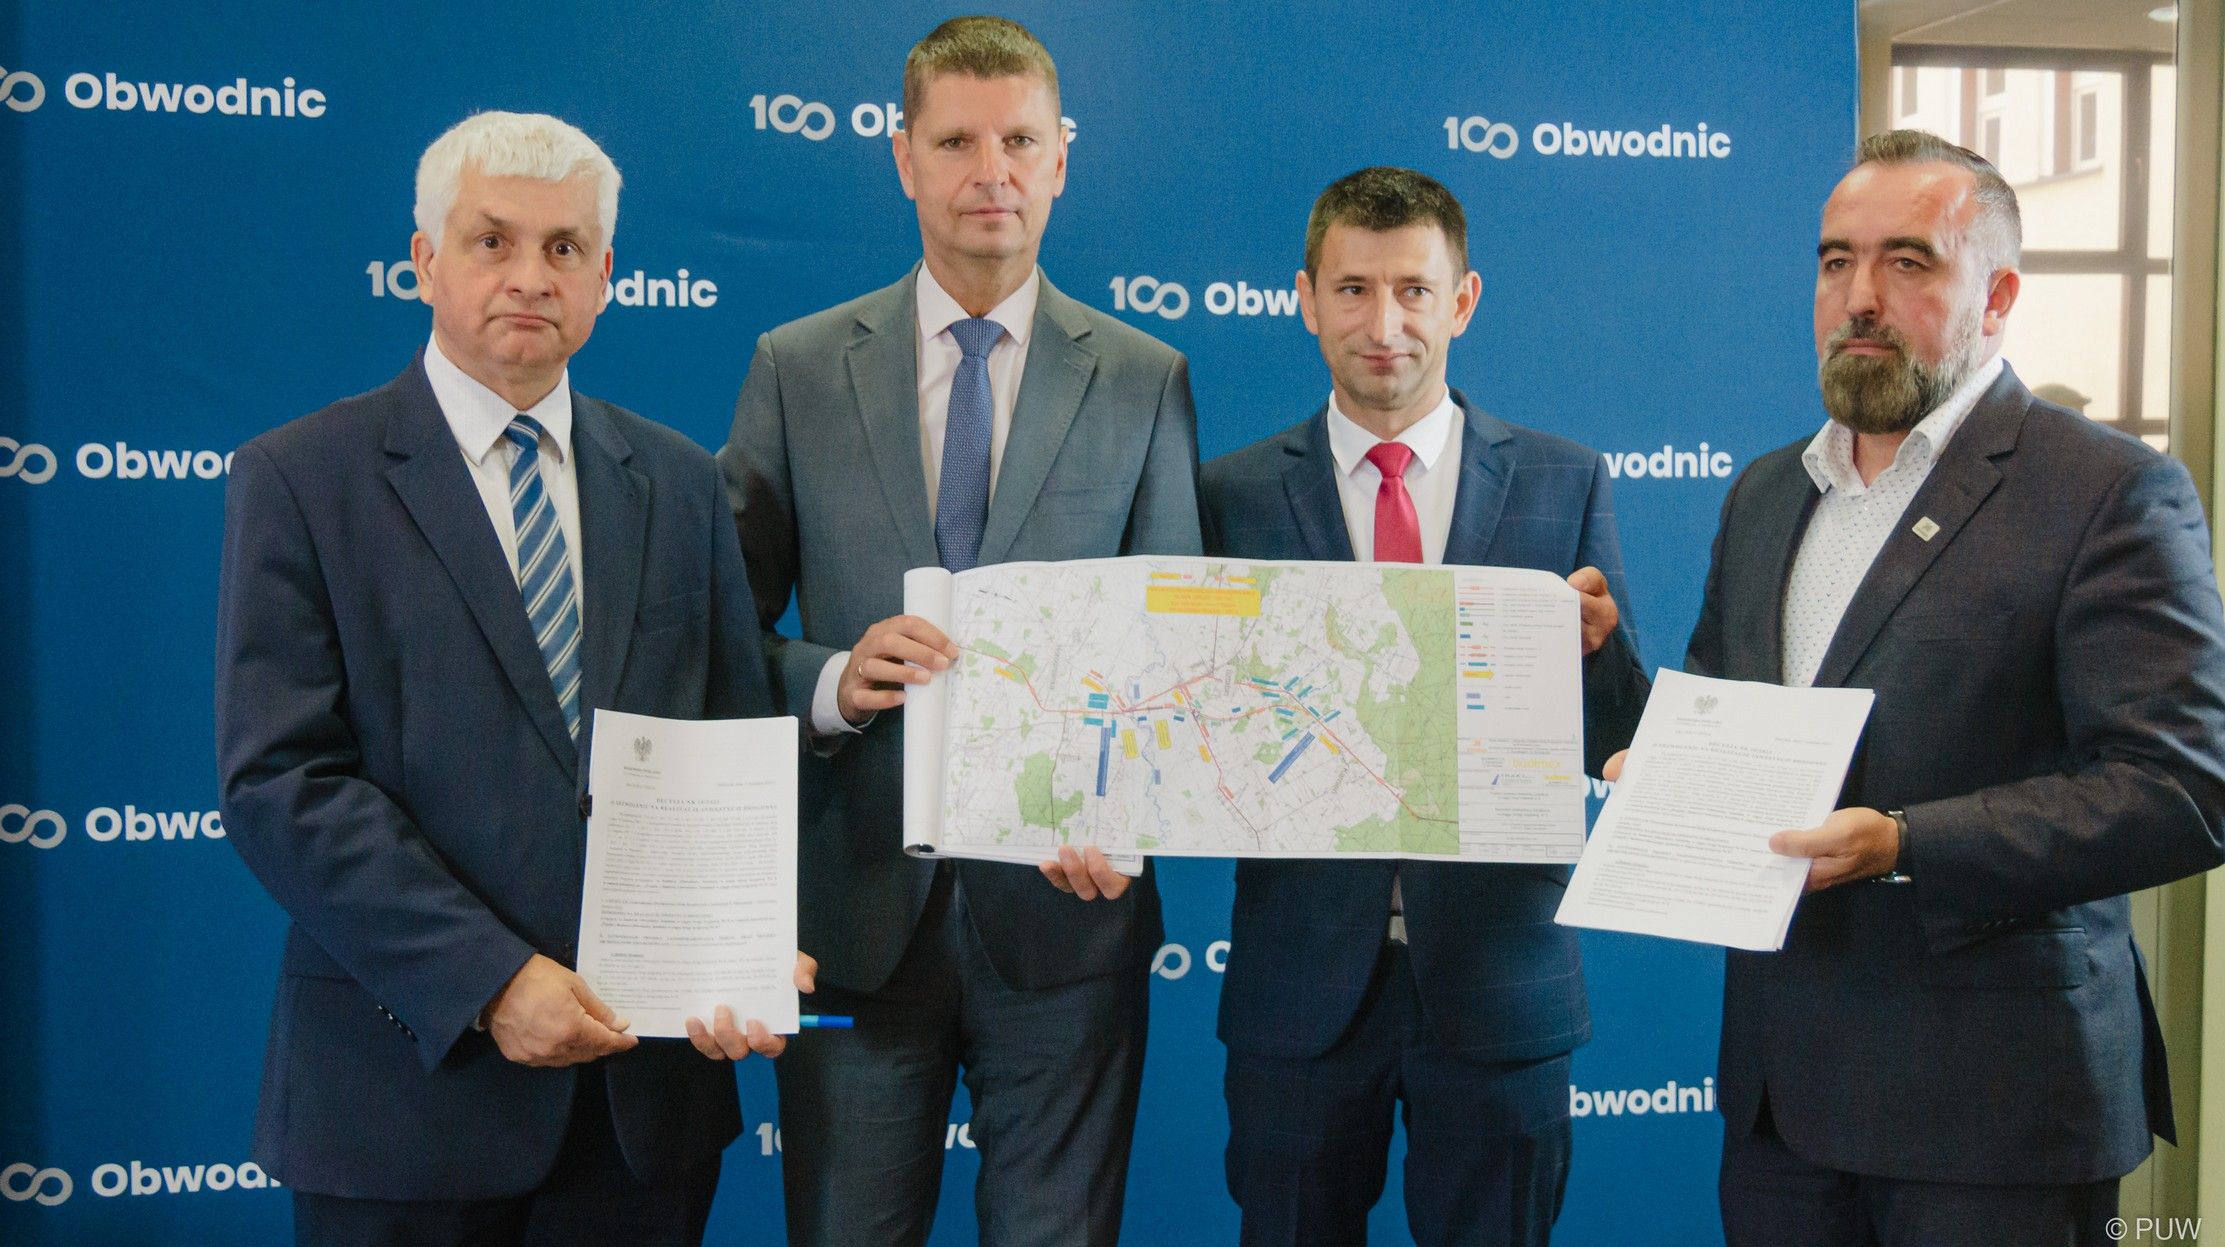 Program budowy 100 obwodnic: Wojewoda wydał ZRID na obwodnicę Sztabina
Program budowy 100 obwodn...